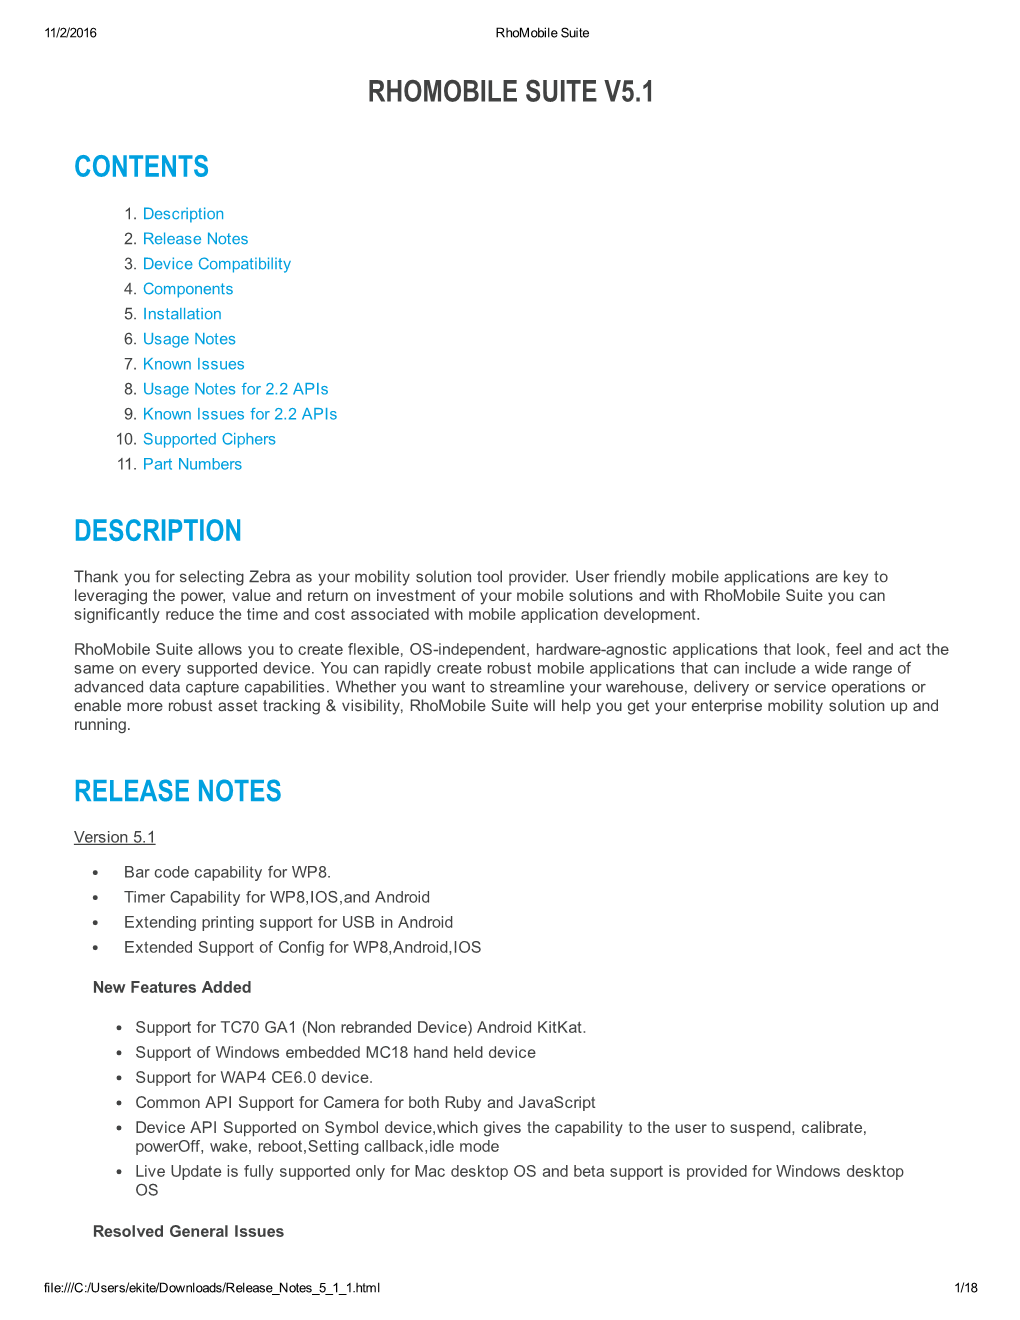 Rhomobile Suite V5.1 Contents Description Release Notes